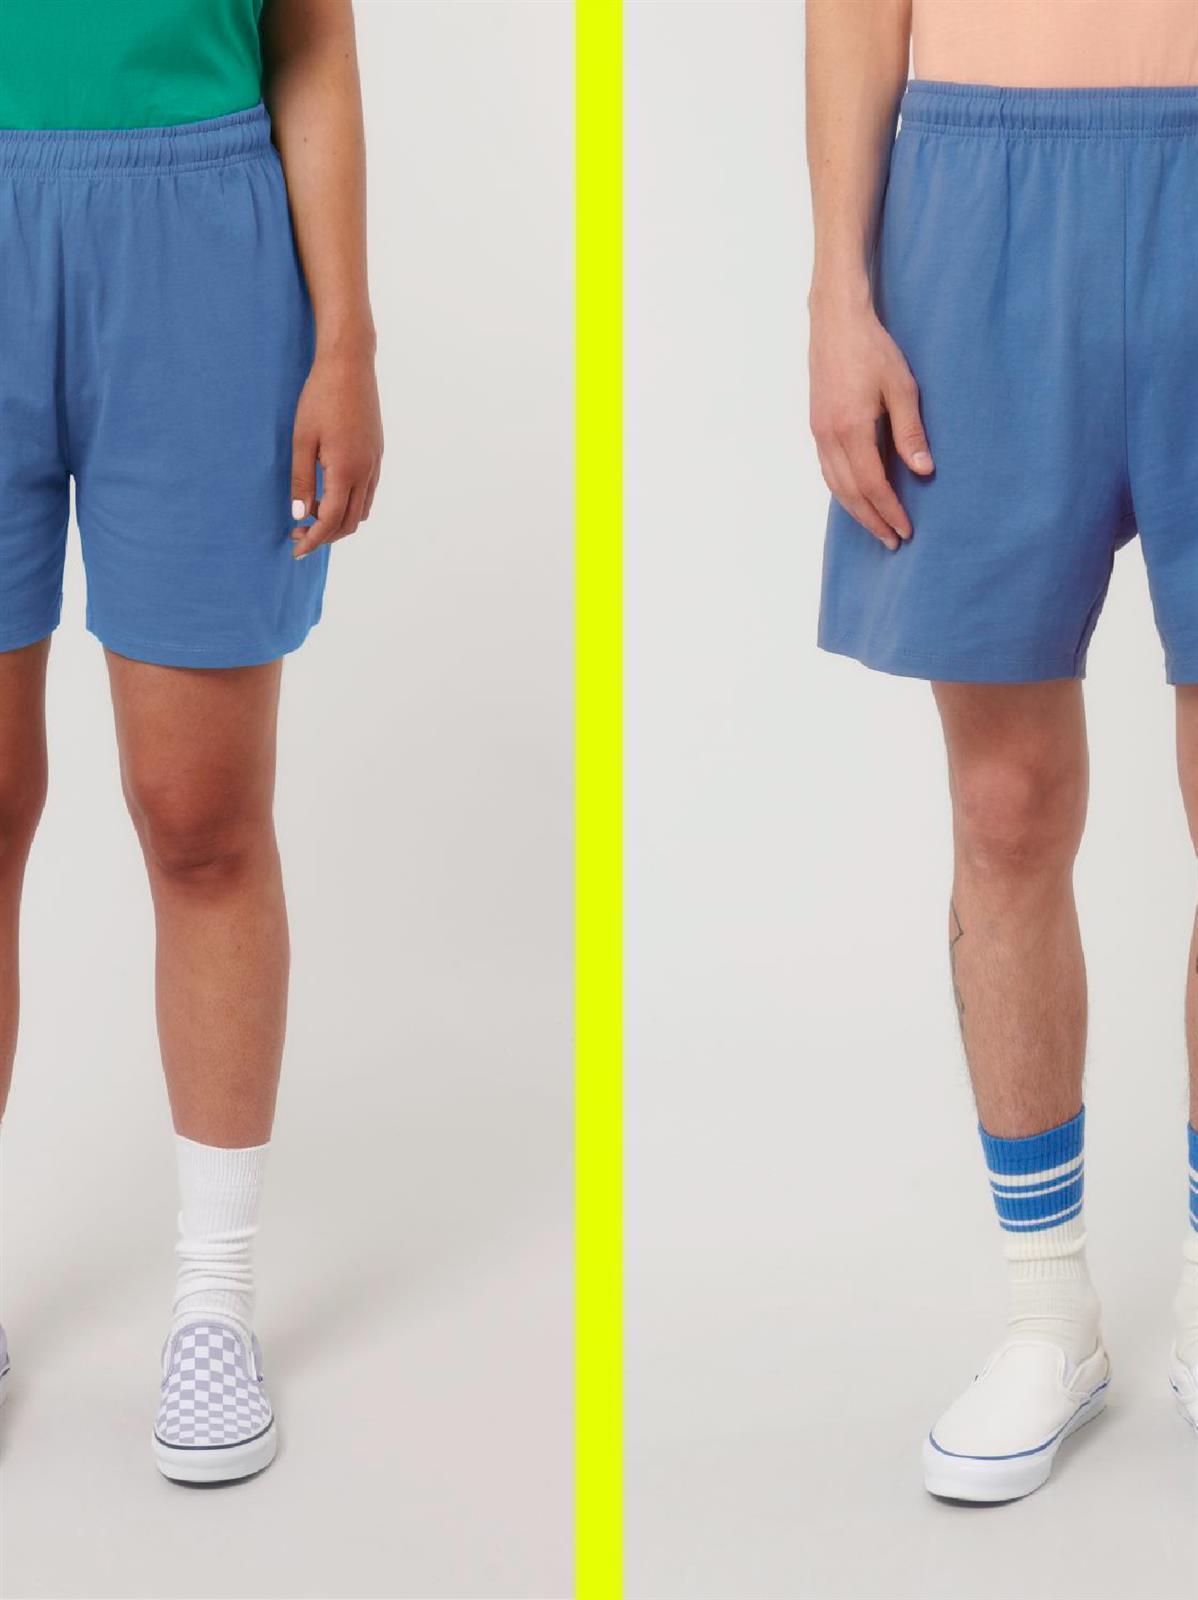 Baumwoll-Shorts Modell: Wakon von Unipolar